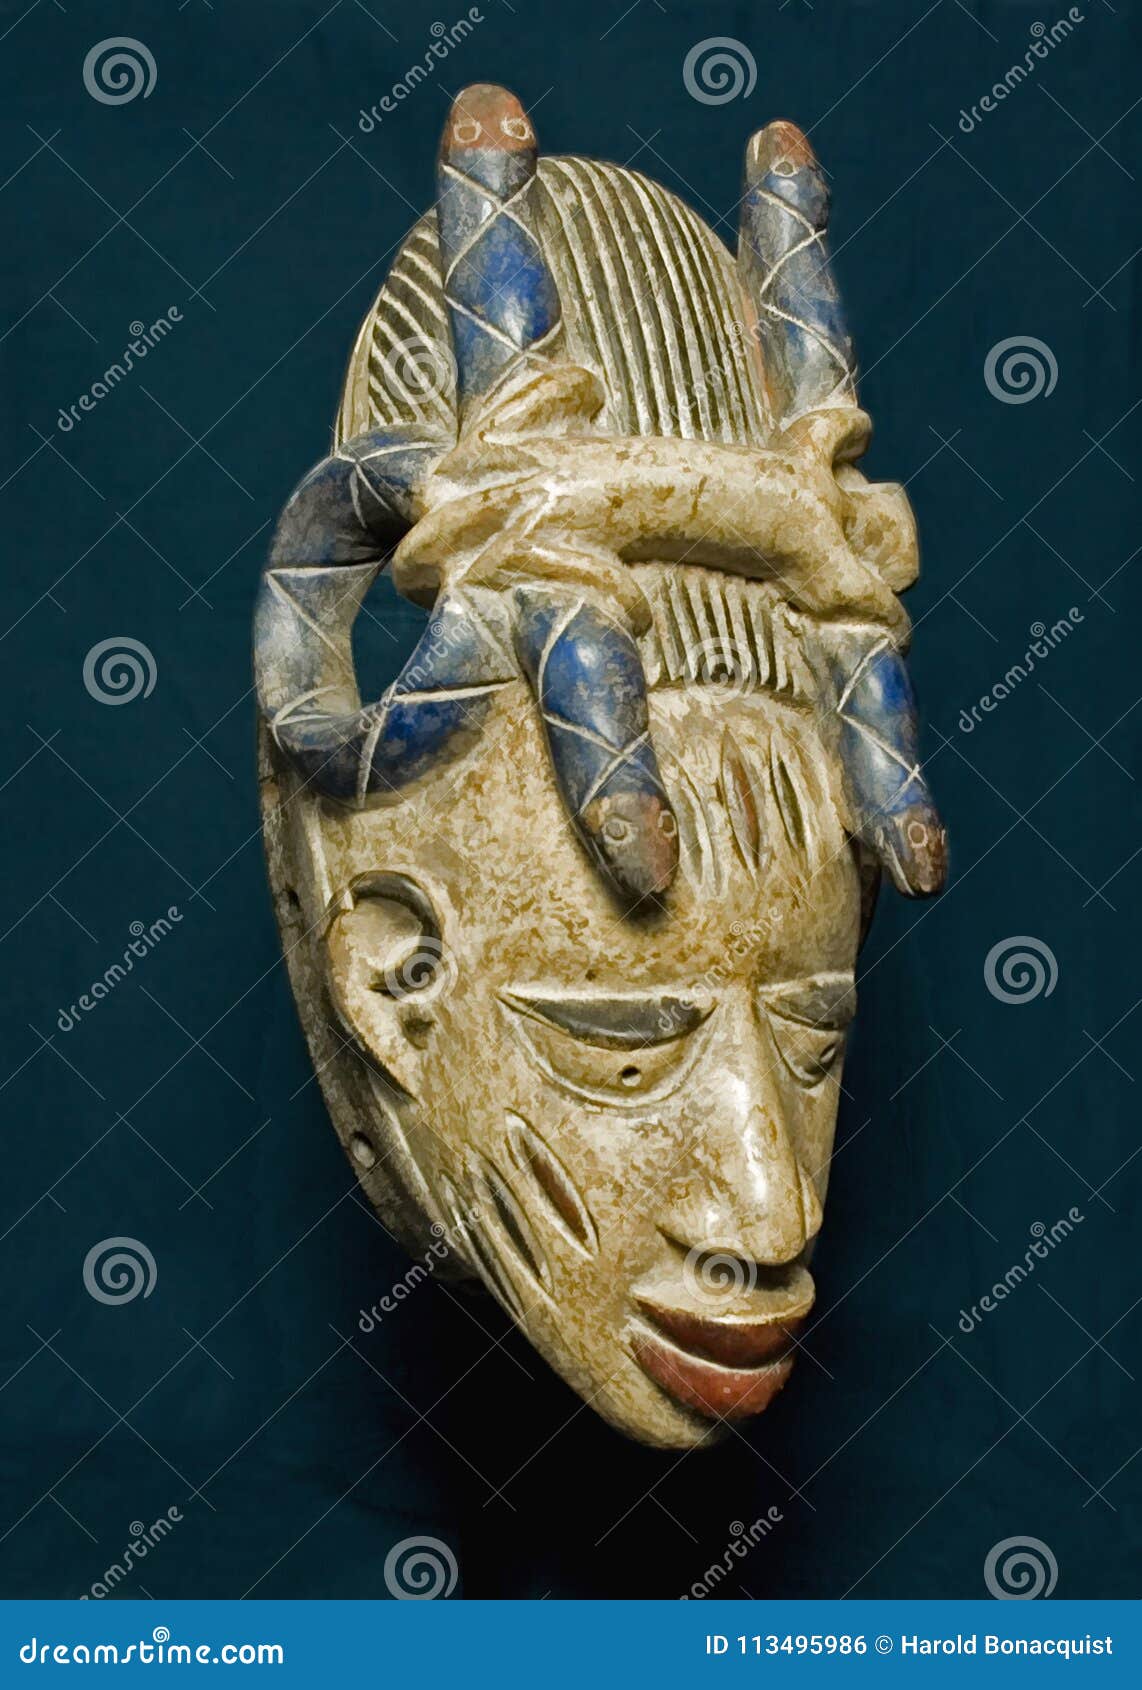 ingeniørarbejde Begravelse officiel Wooden Mask from Nigeria stock photo. Image of cult - 113495986